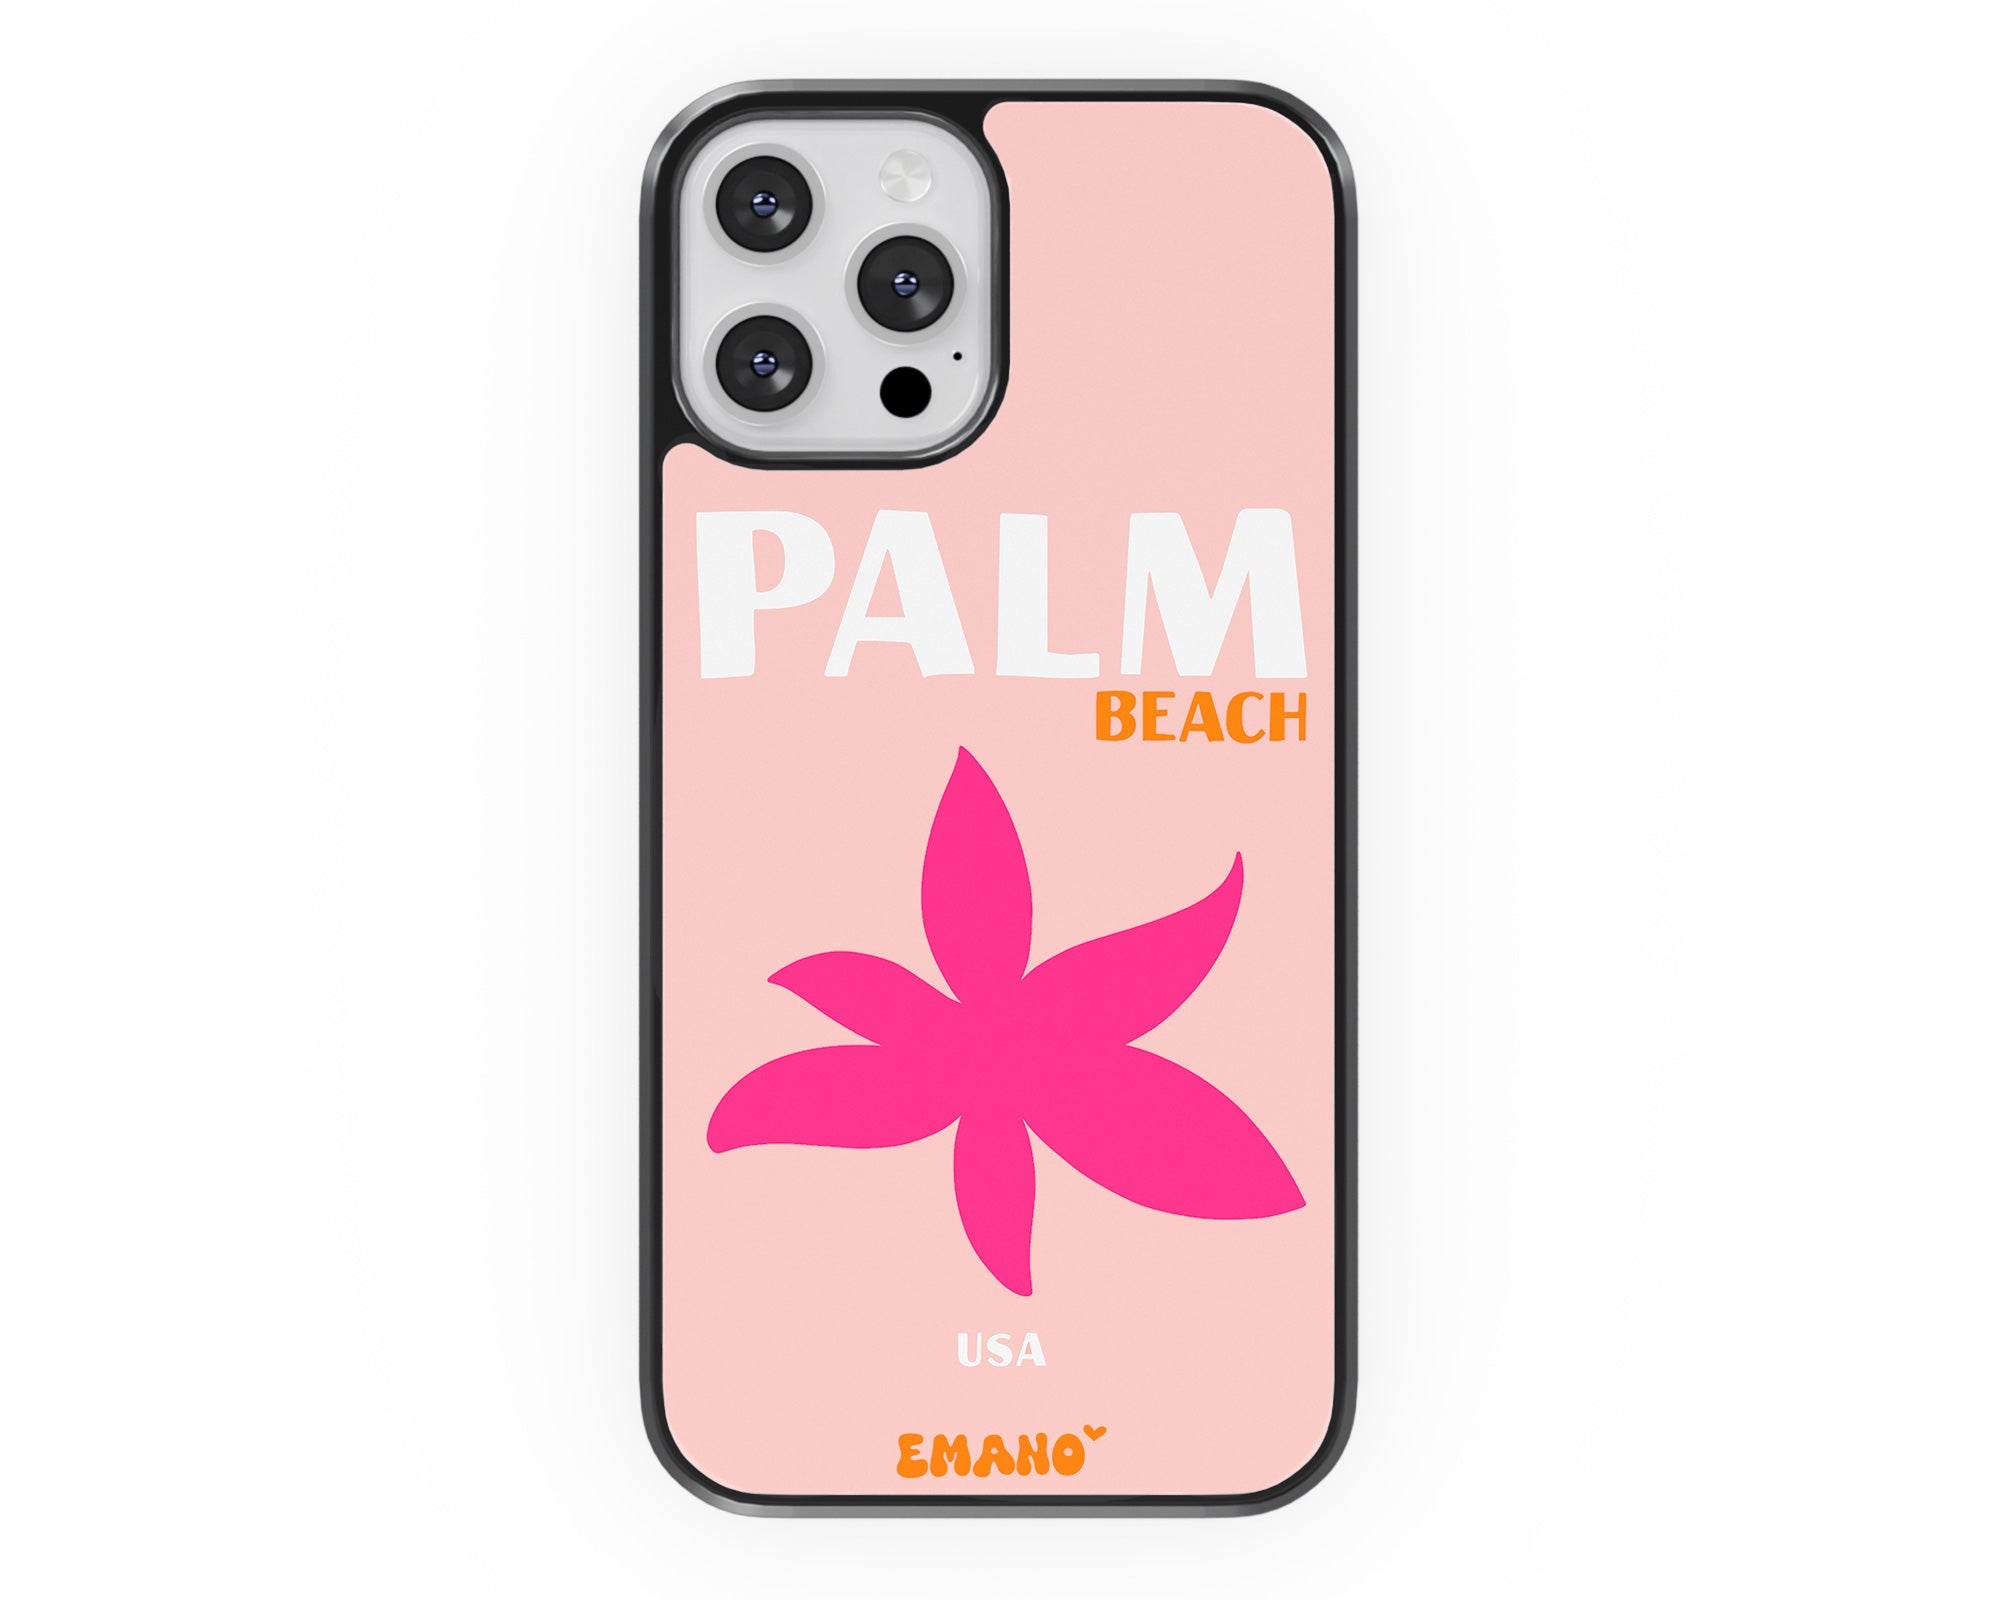 Plongez dans l'ambiance tropicale de Palm Beach avec notre coque Emano. Emportez un peu de ce paradis partout où vous allez. 🌴📱 #EmanoTropical